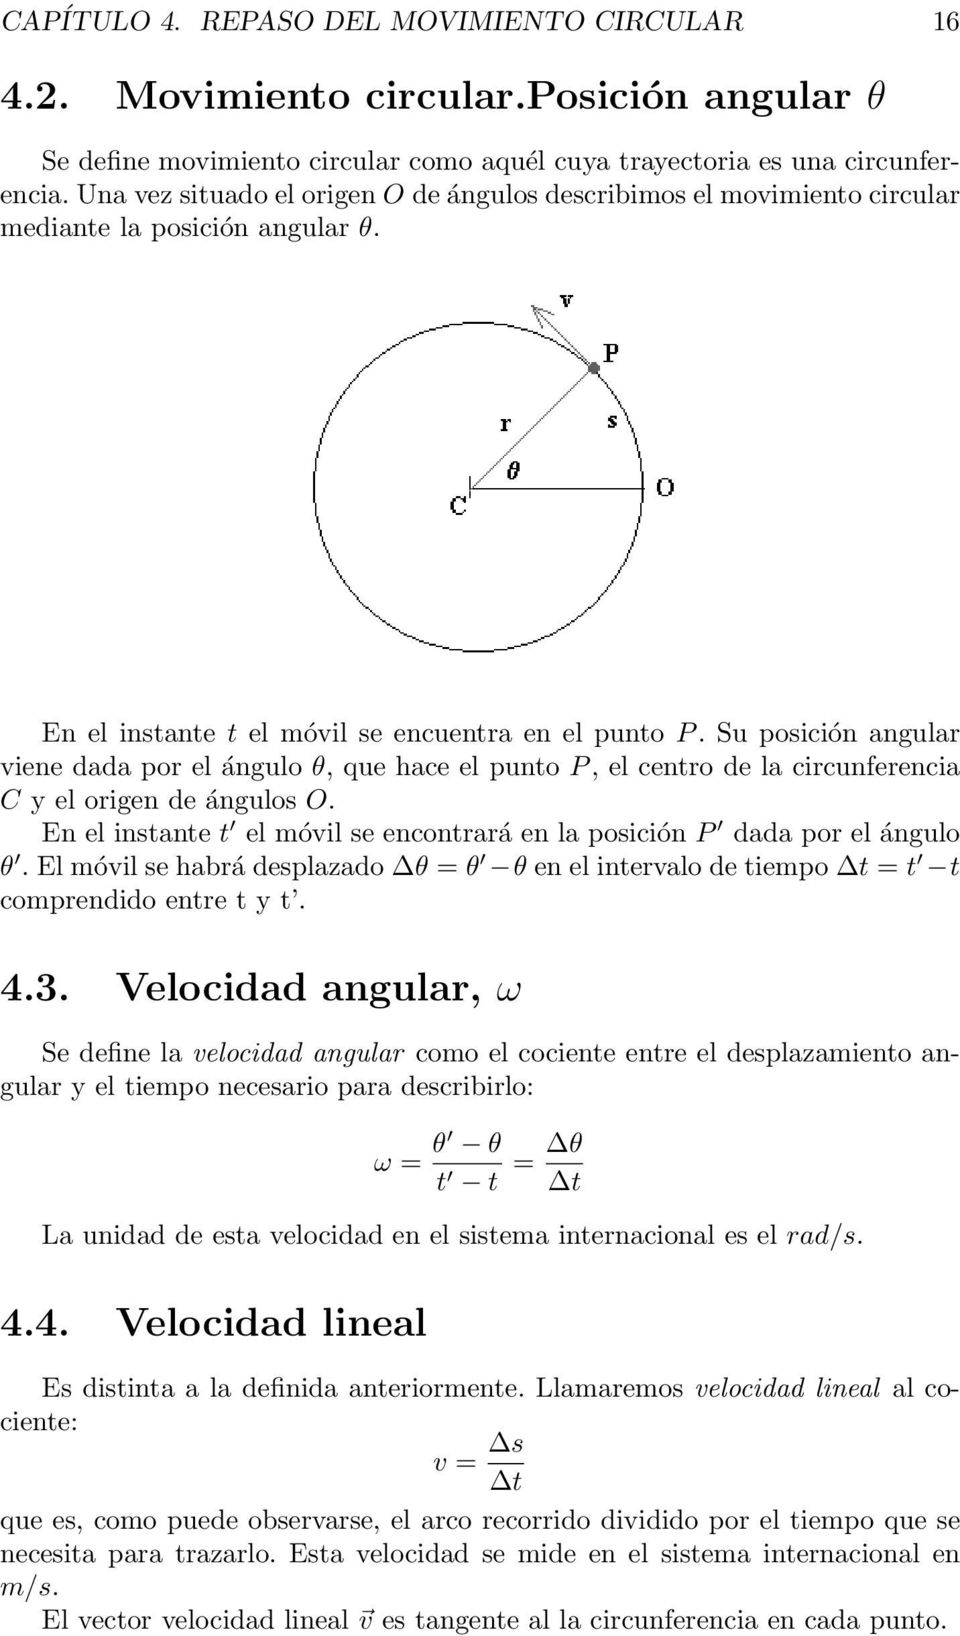 Su posición angular viene dada por el ángulo θ, que hace el punto P, el centro de la circunferencia C y el origen de ángulos O.